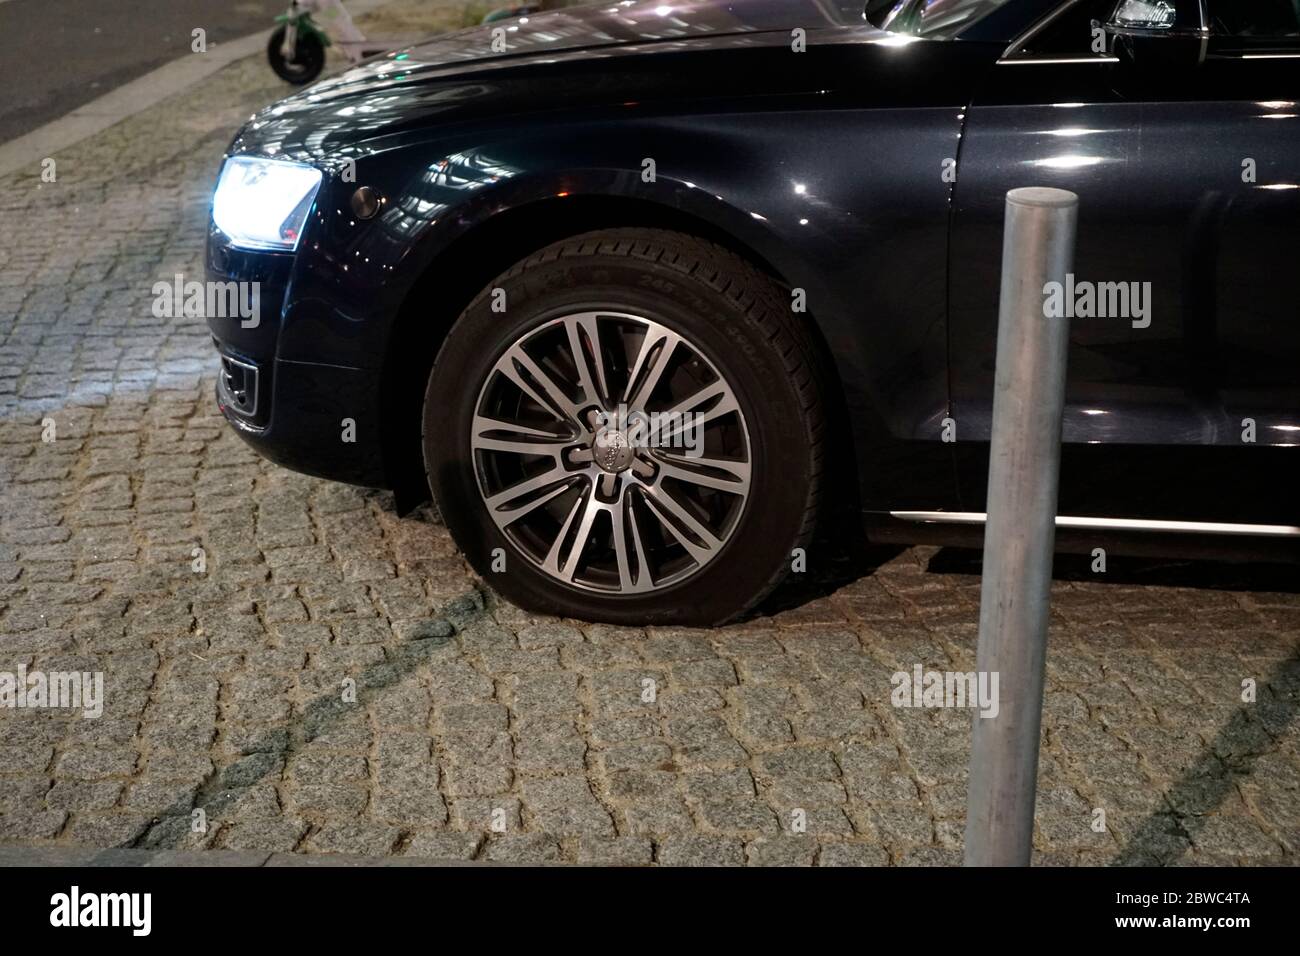 Platten an Fahrzeug Nr. 2 vorne, zwei Audi Limousinen, die die Autokolonne  der Bundeskanzlerin darstellen, bei geanuerem Hinsehen, haben BEIDE FAHRZEU  Photo Stock - Alamy